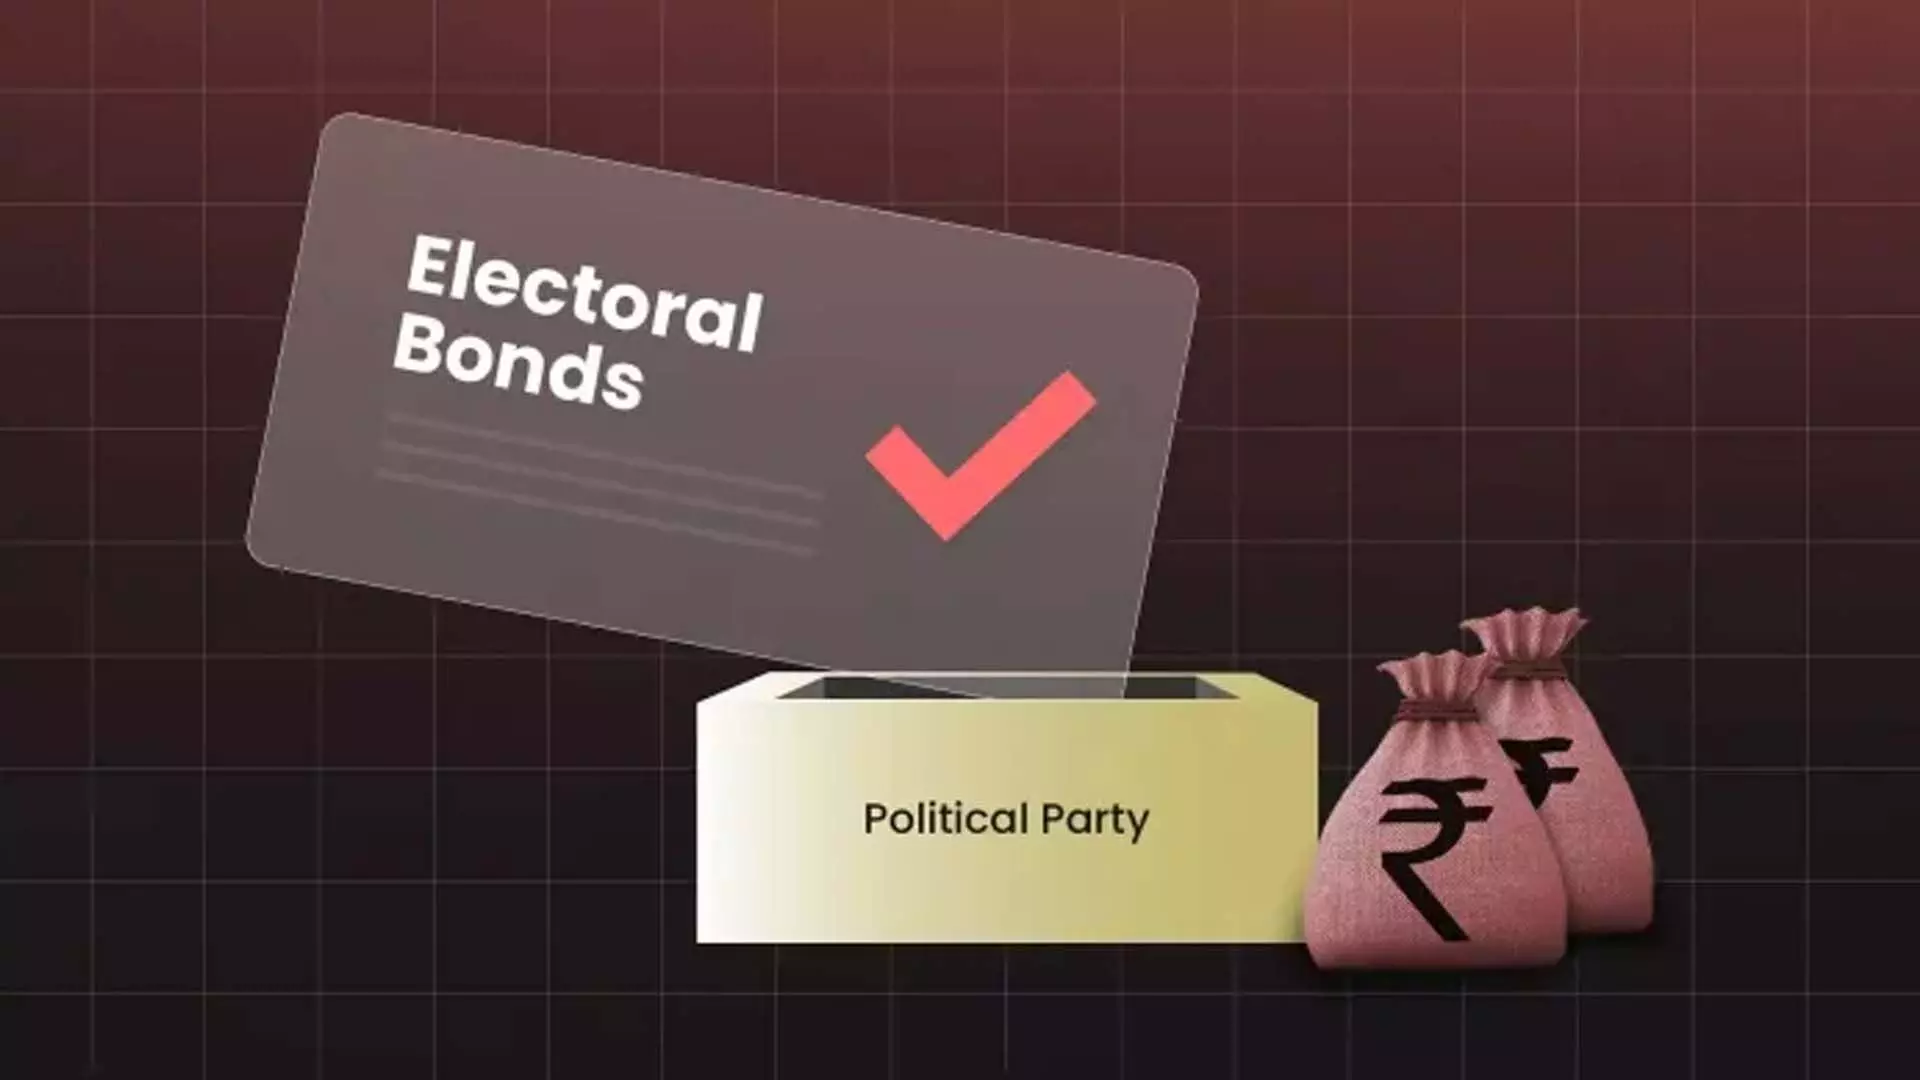 विपक्षी दलों ने चुनावी बांड योजना को आजाद भारत का सबसे बड़ा घोटाला करार दिया